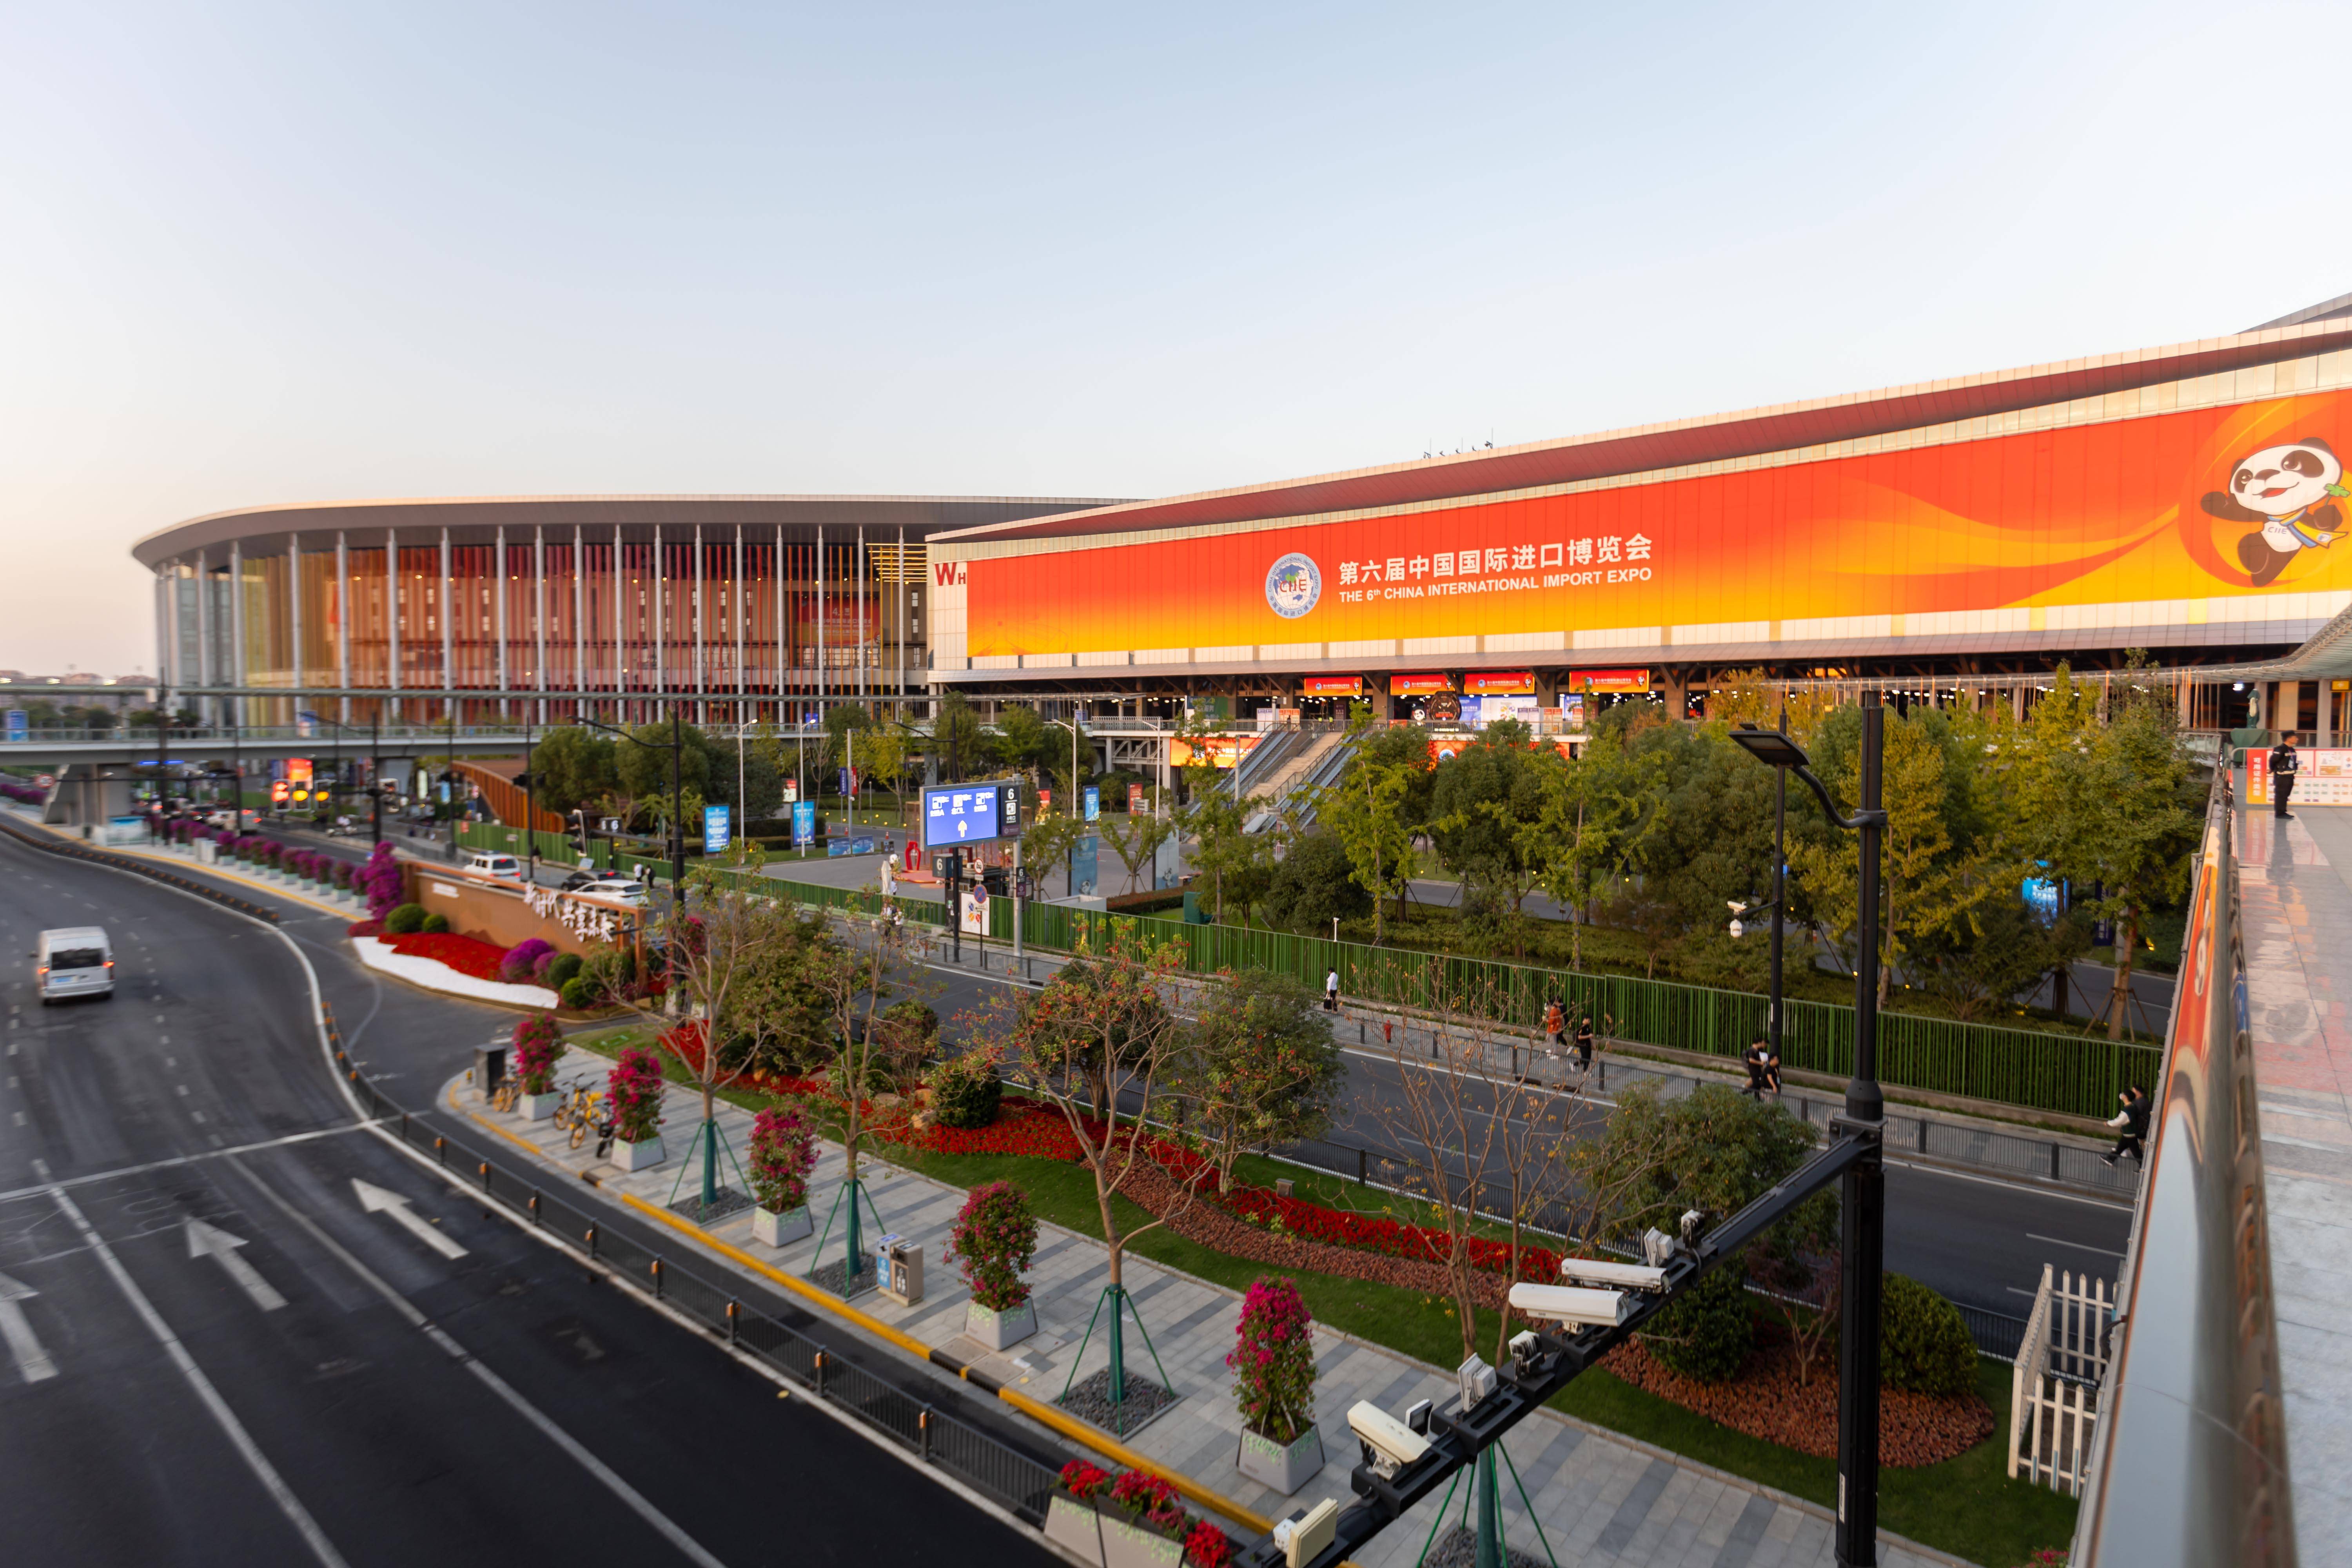 新华社记者 王翔 摄第六届中国国际进口博览会即将在上海举行,国家